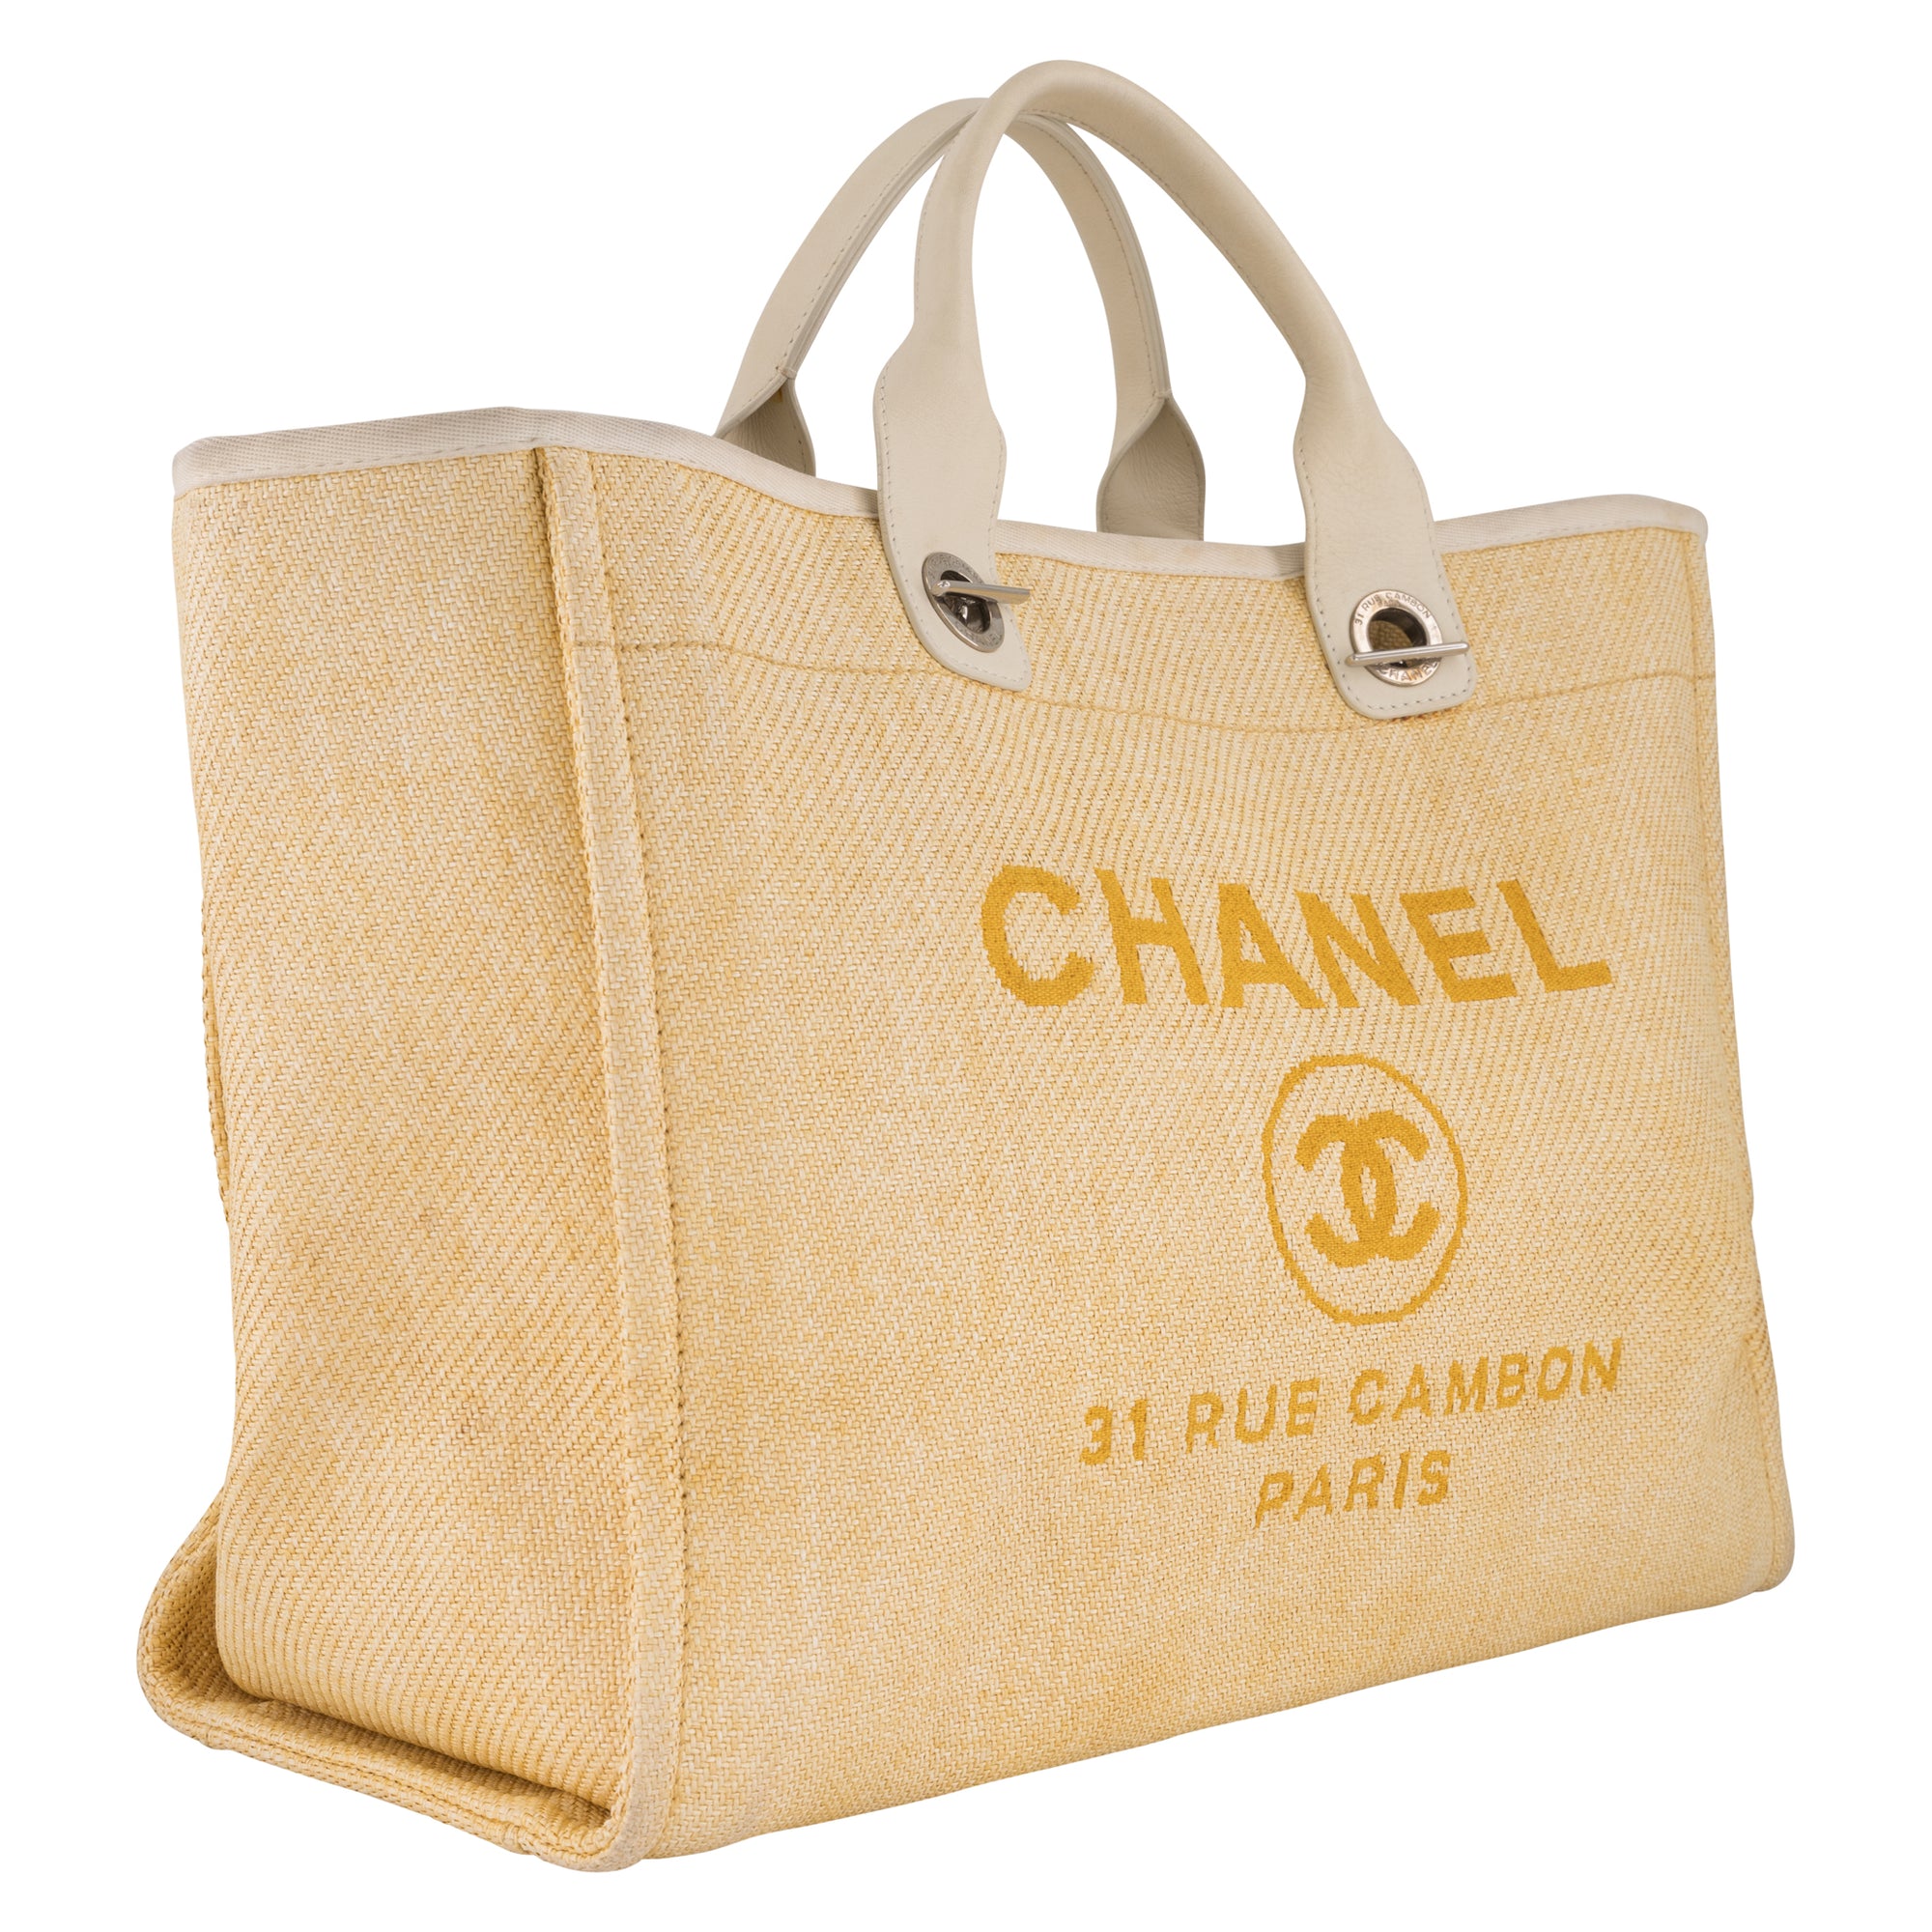 chanel deauville handbag